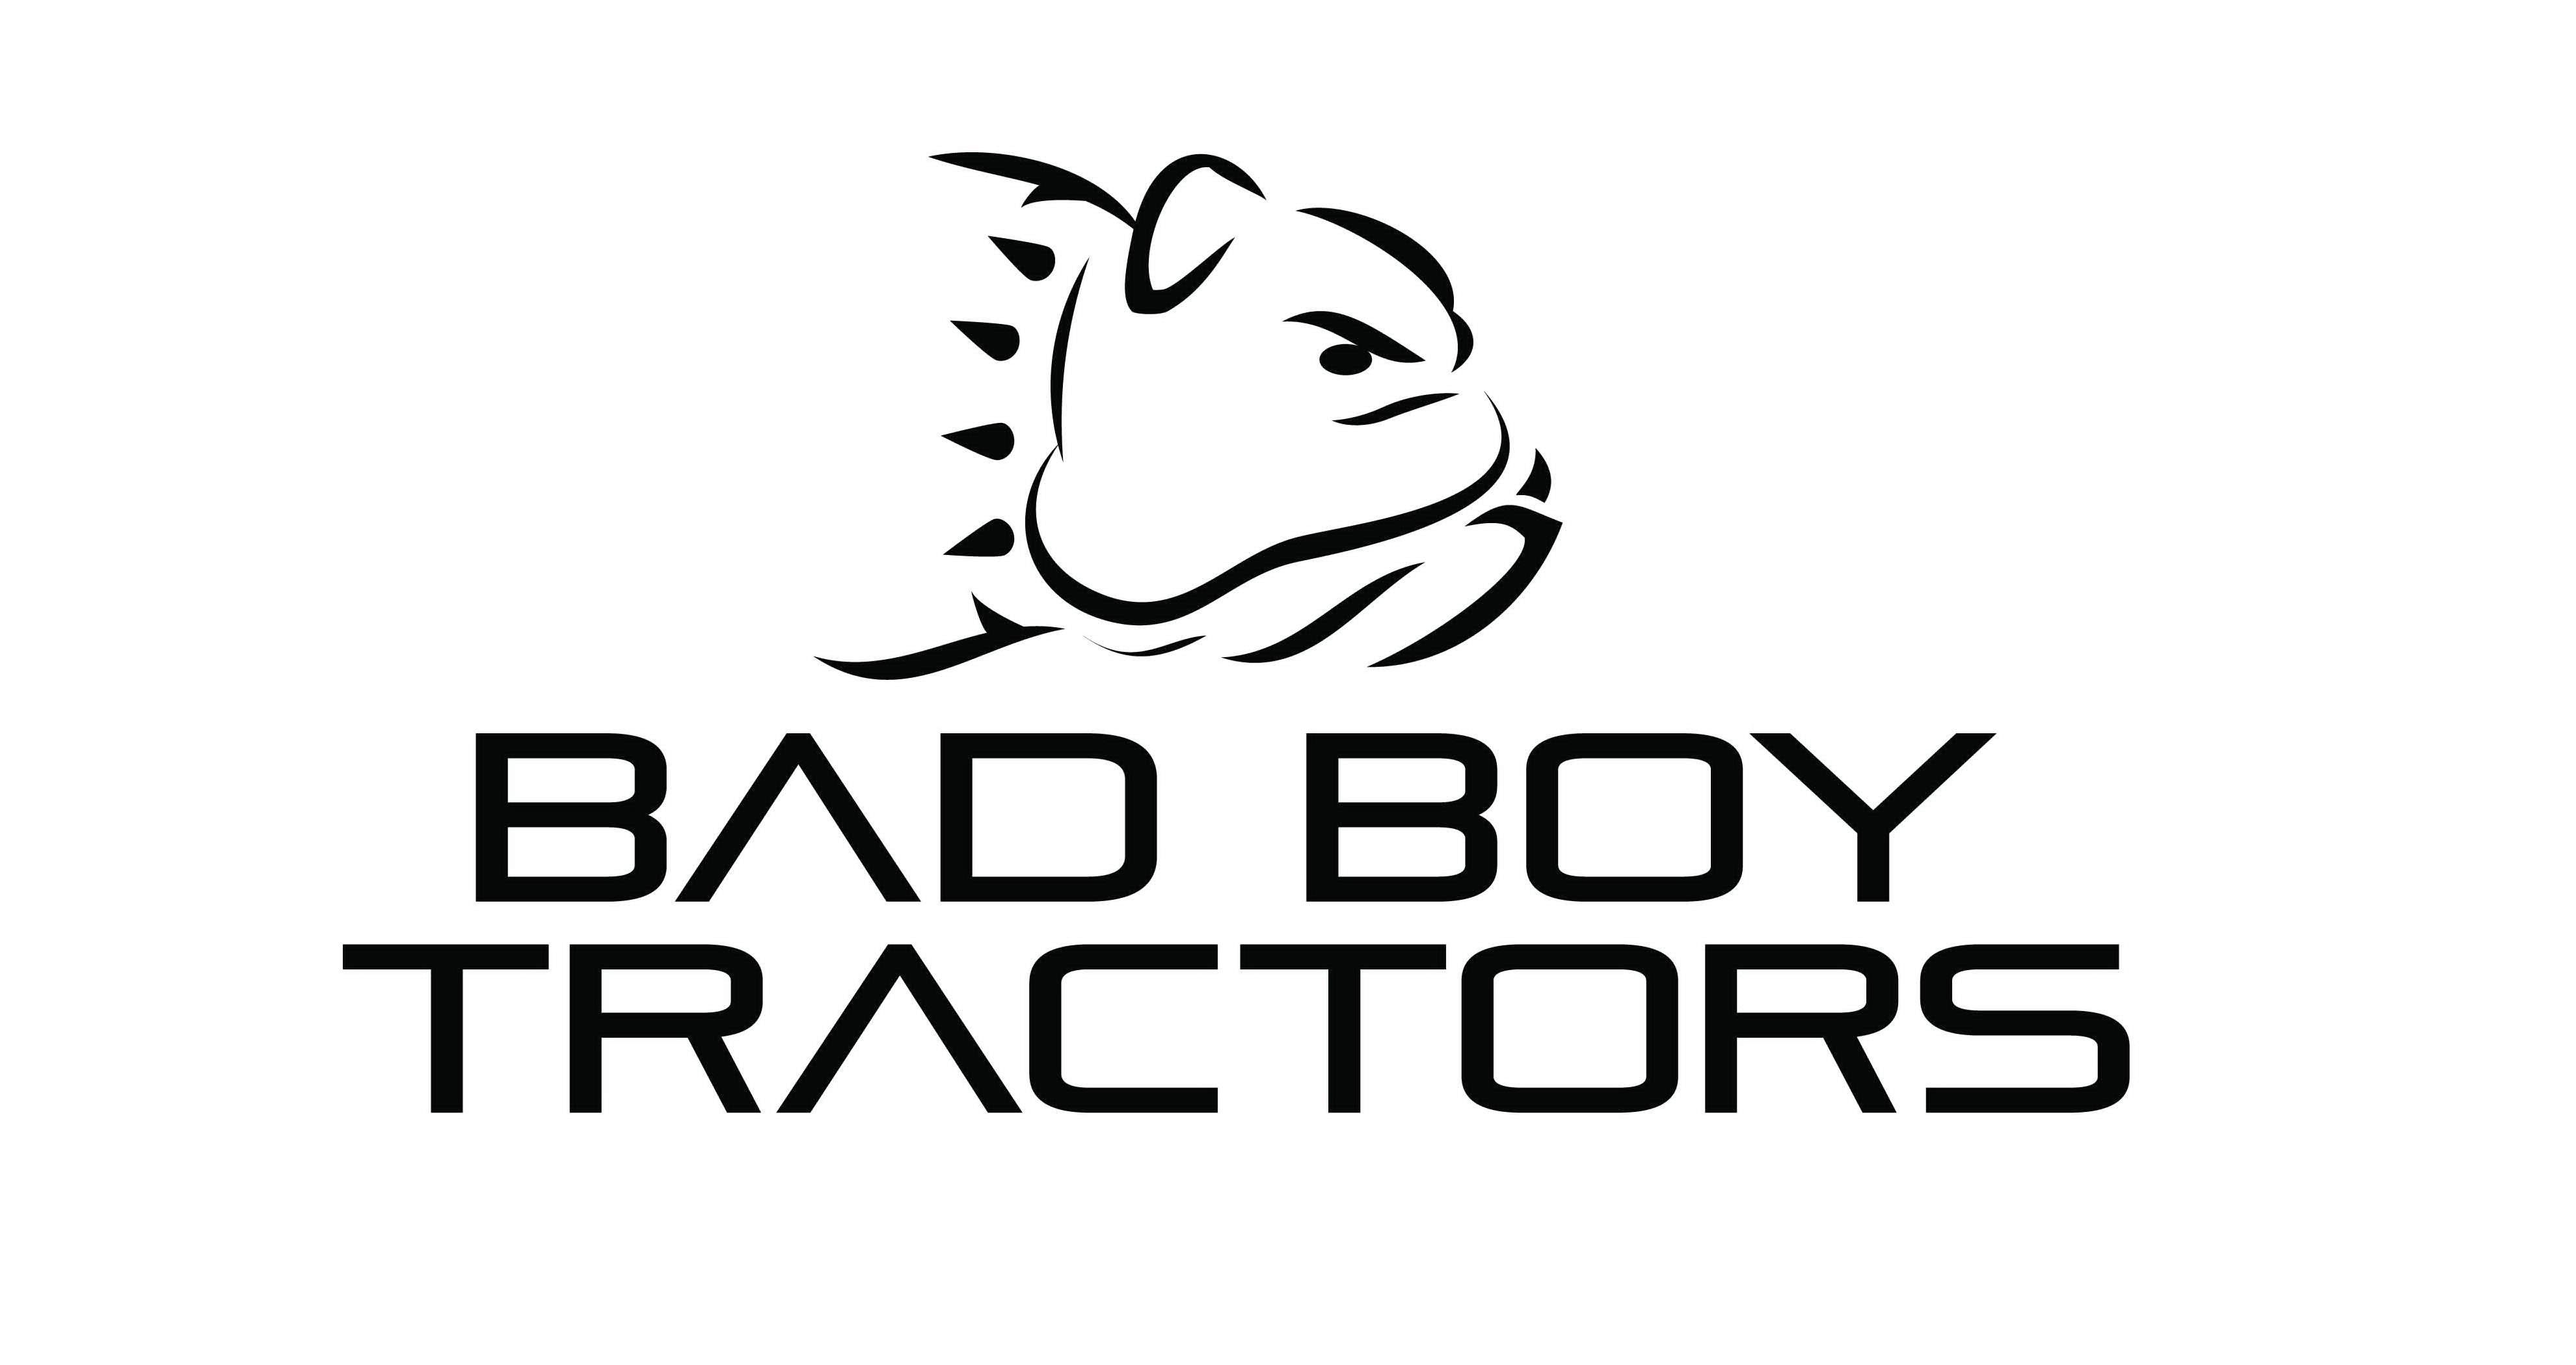  BAD BOY TRACTORS